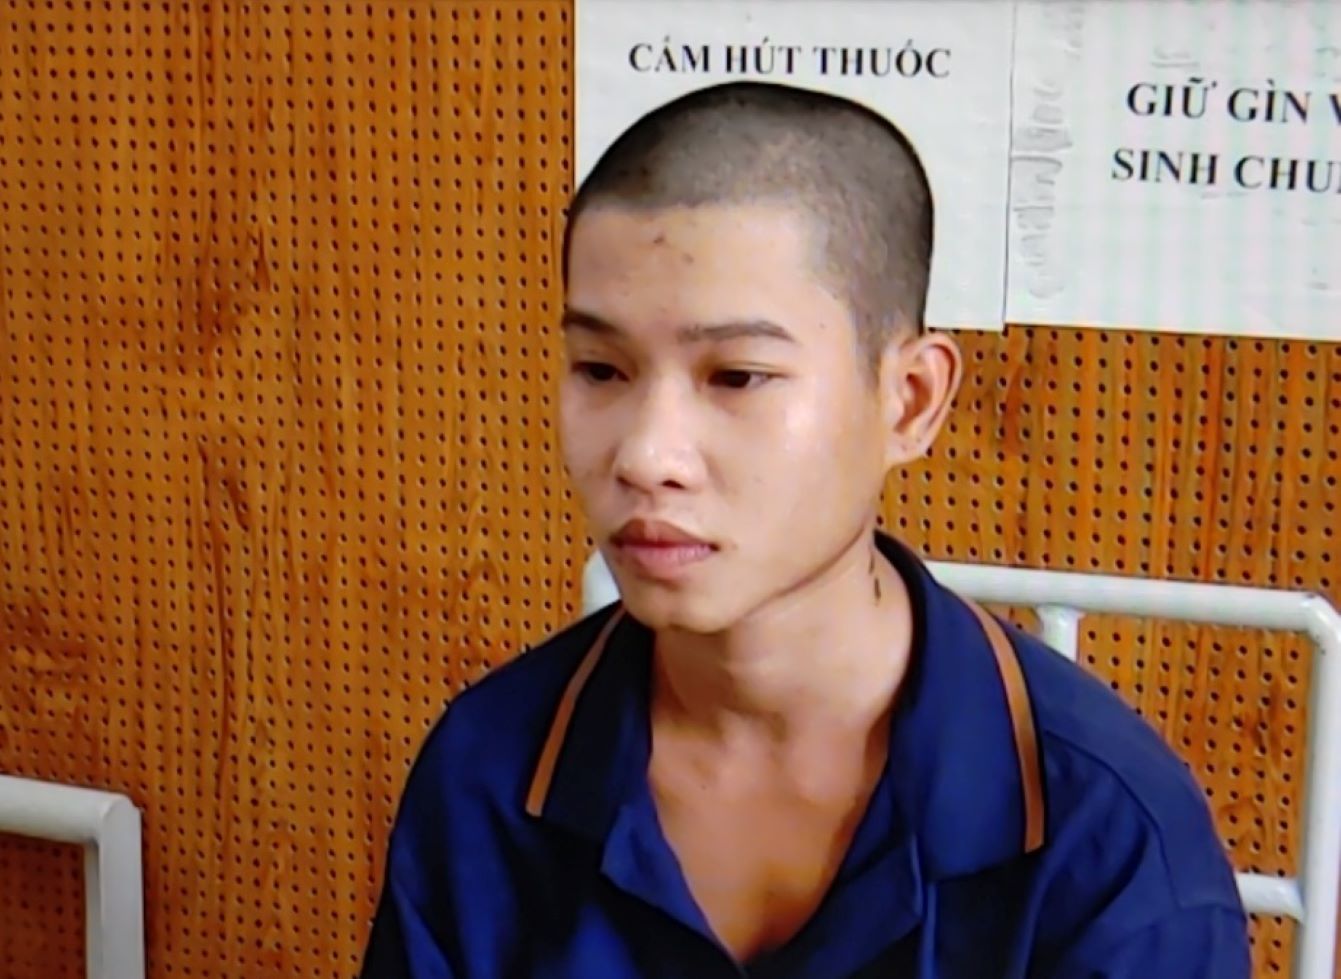 Đối tượng Nguyễn Hữu Phước bị truy tố về tội giao cấu với trẻ em. Ảnh: Nghiêm Túc